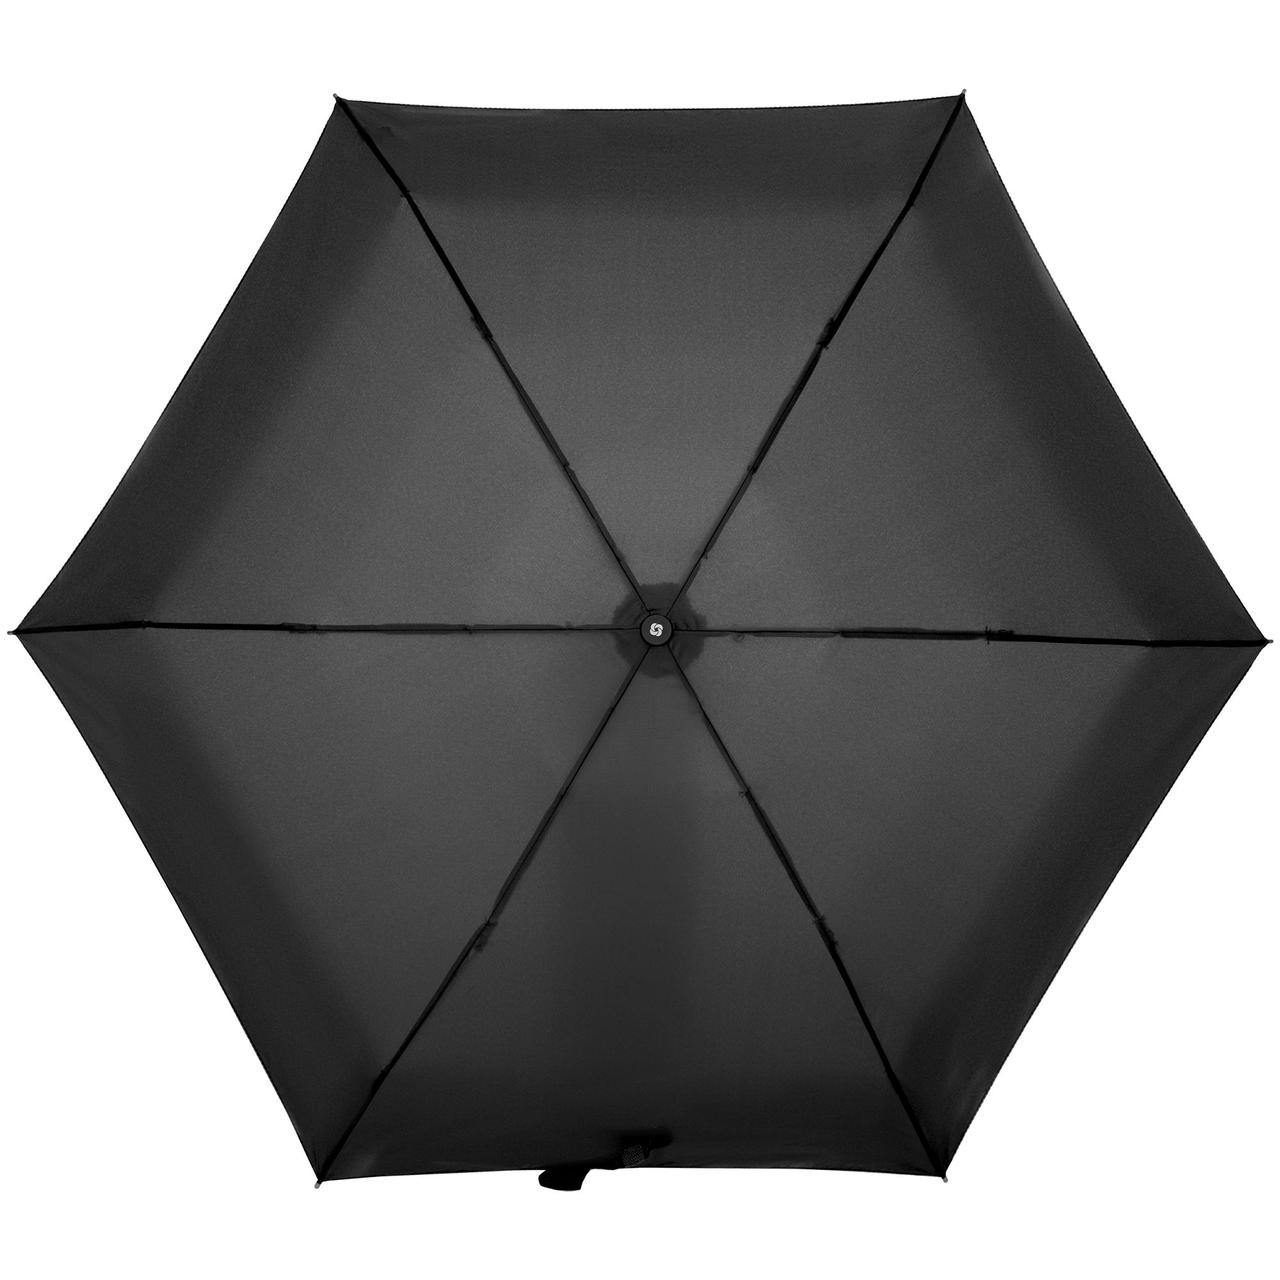 Зонт складной Minipli Colori S, черный (артикул CJ6-09005)